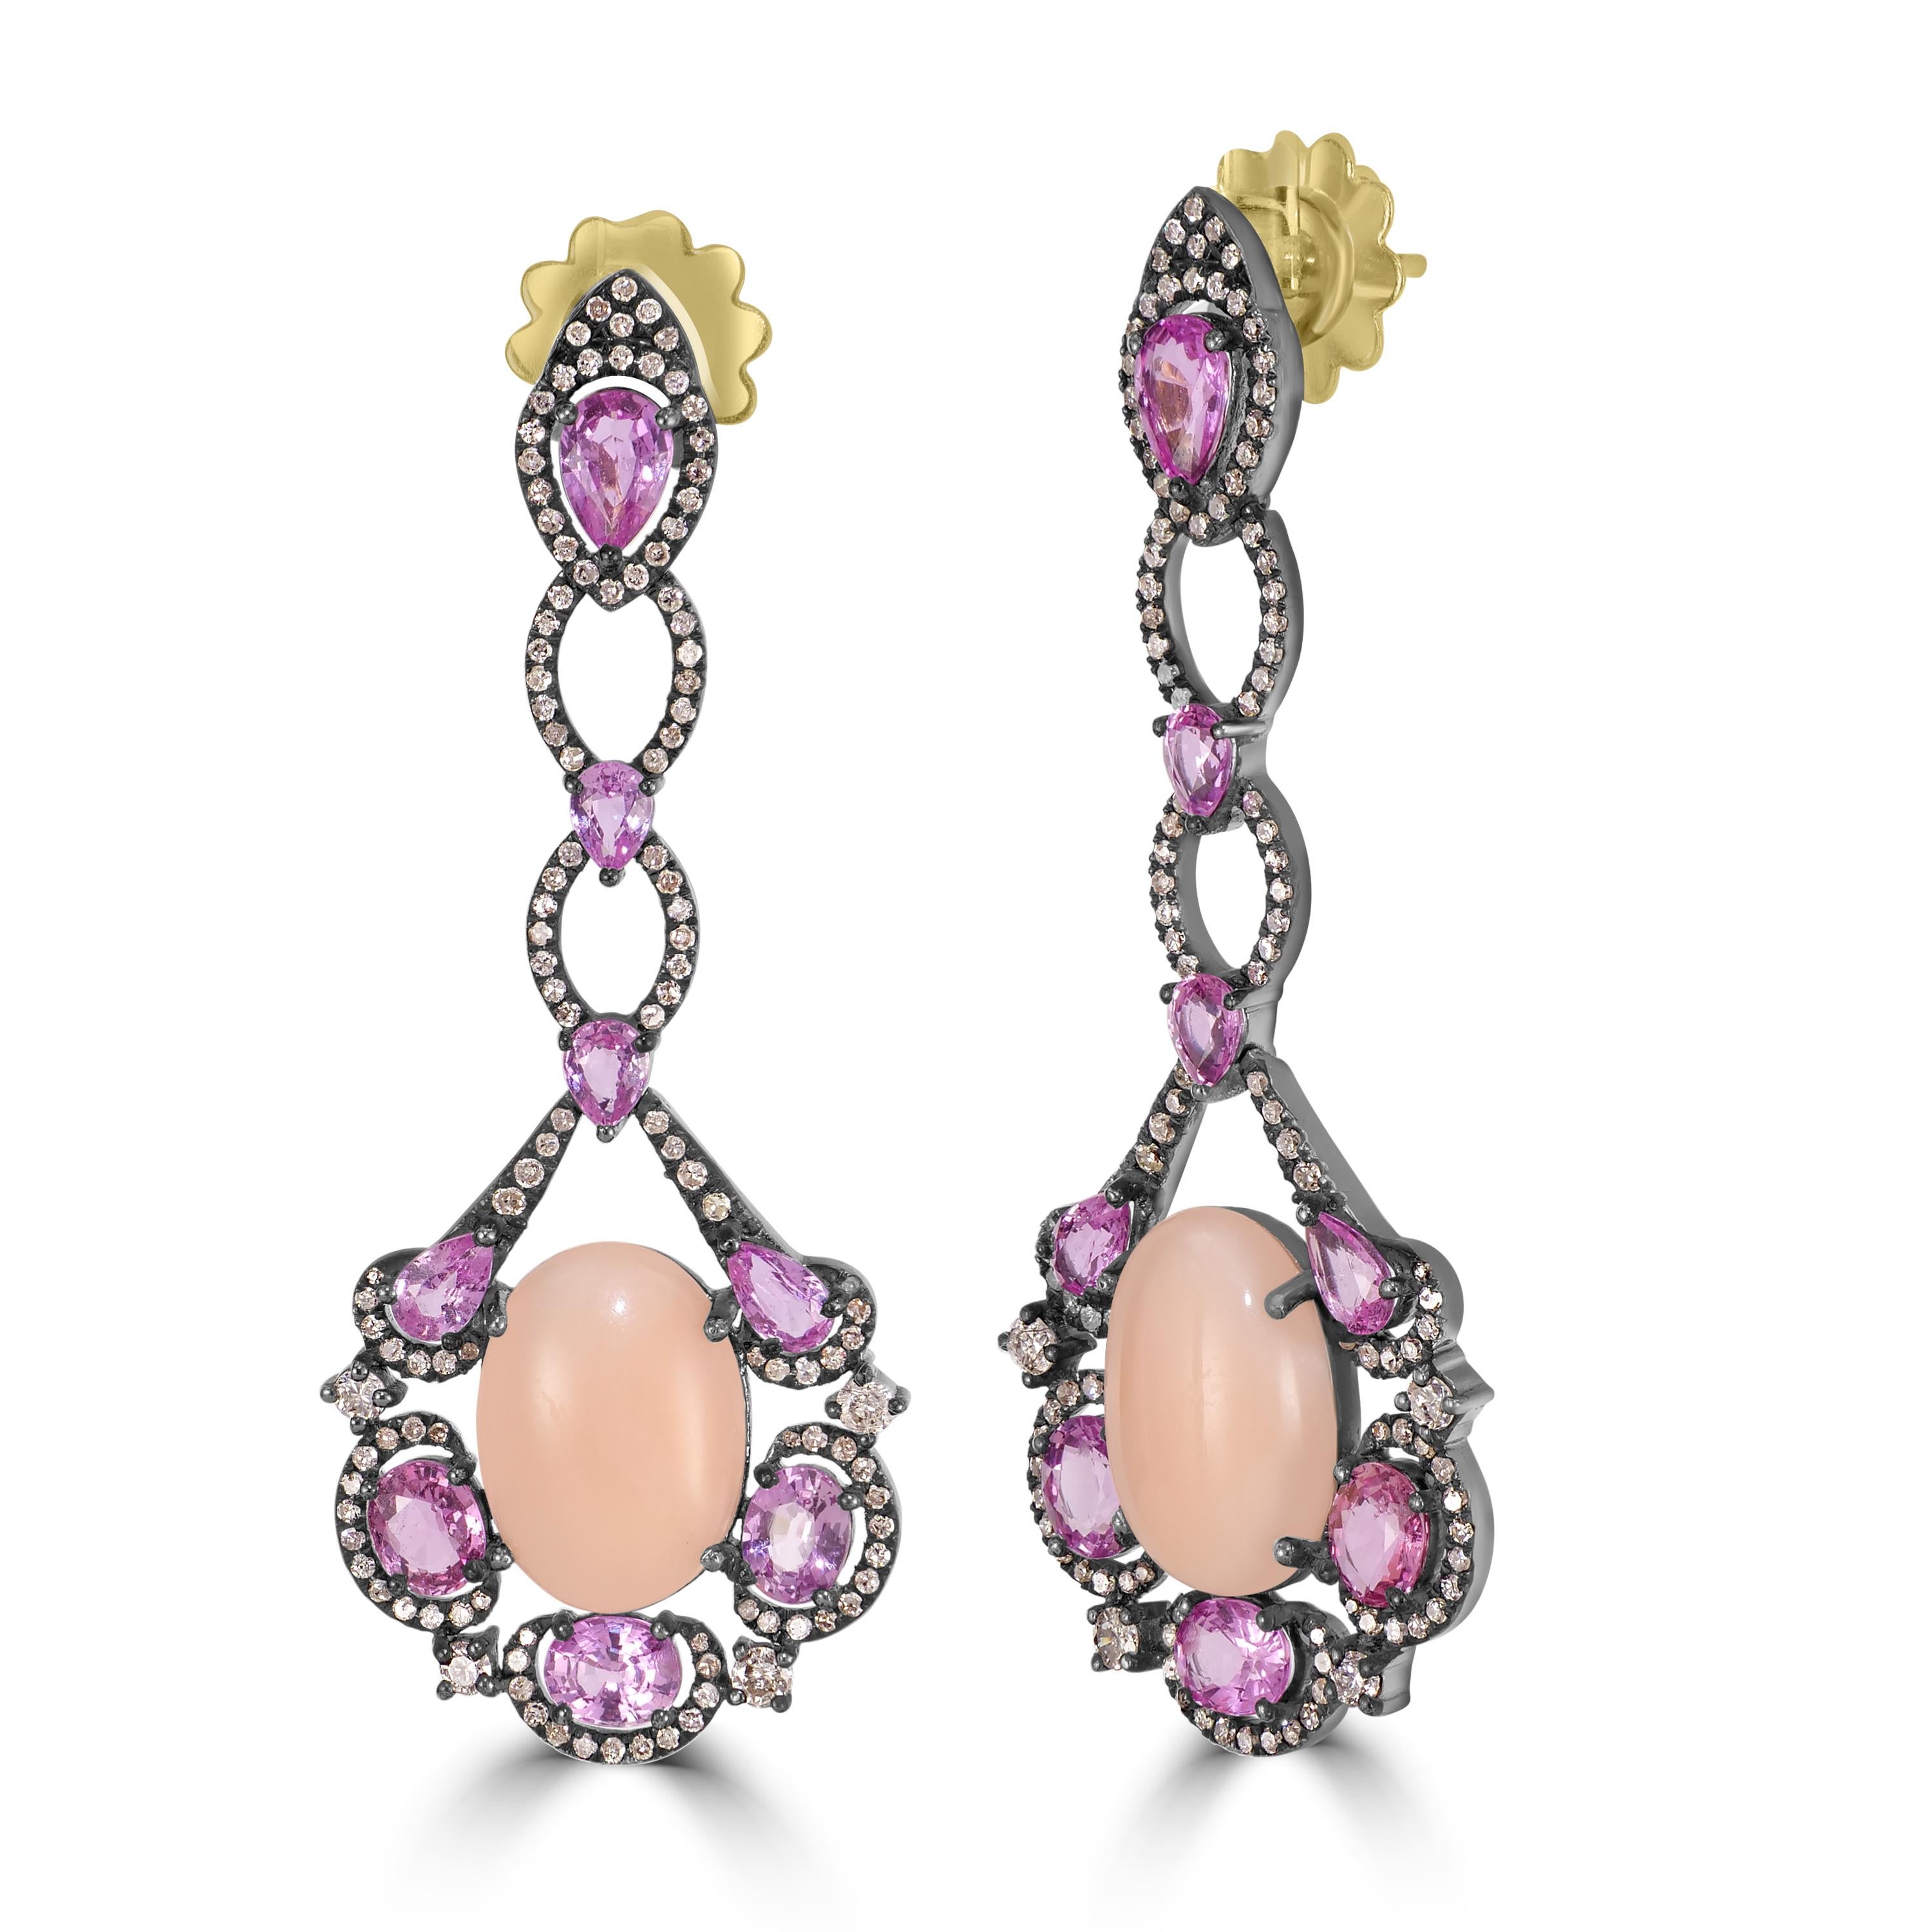 Wir präsentieren unseren viktorianischen 15.3 Cttw. Pfirsichkoralle, rosafarbener Saphir und Diamant-Ohrringe - eine atemberaubende Mischung aus Eleganz und Raffinesse.

Diese exquisiten Ohrhänger bestechen durch ihr fesselndes Design mit einer